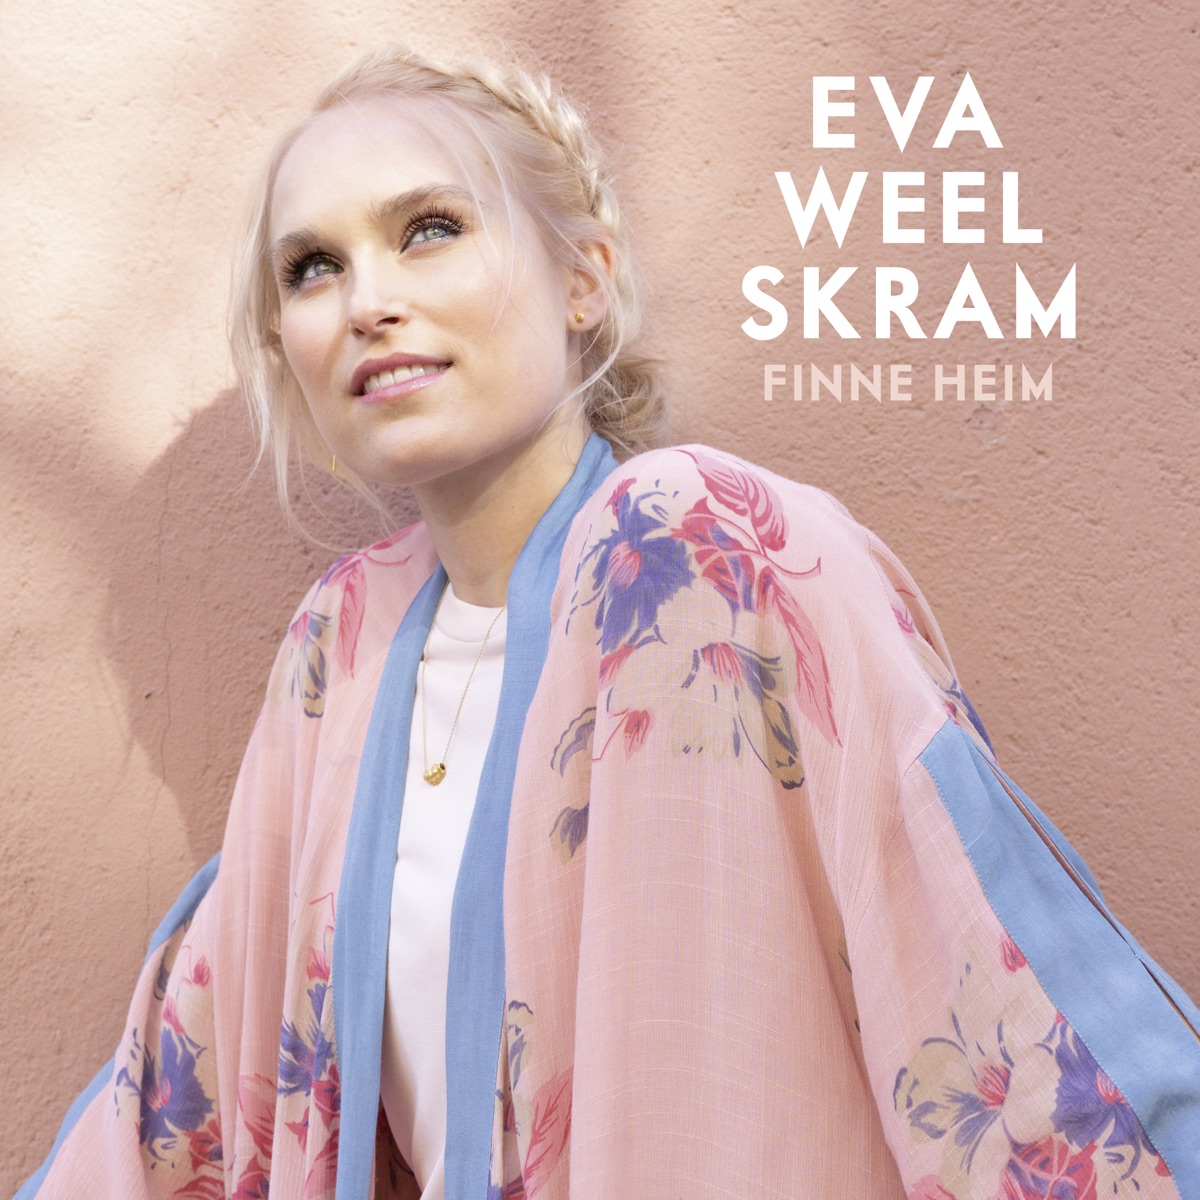 ungdomskriminalitet Delegeret Hører til Du e alt eg treng - Single by Eva Weel Skram on Apple Music